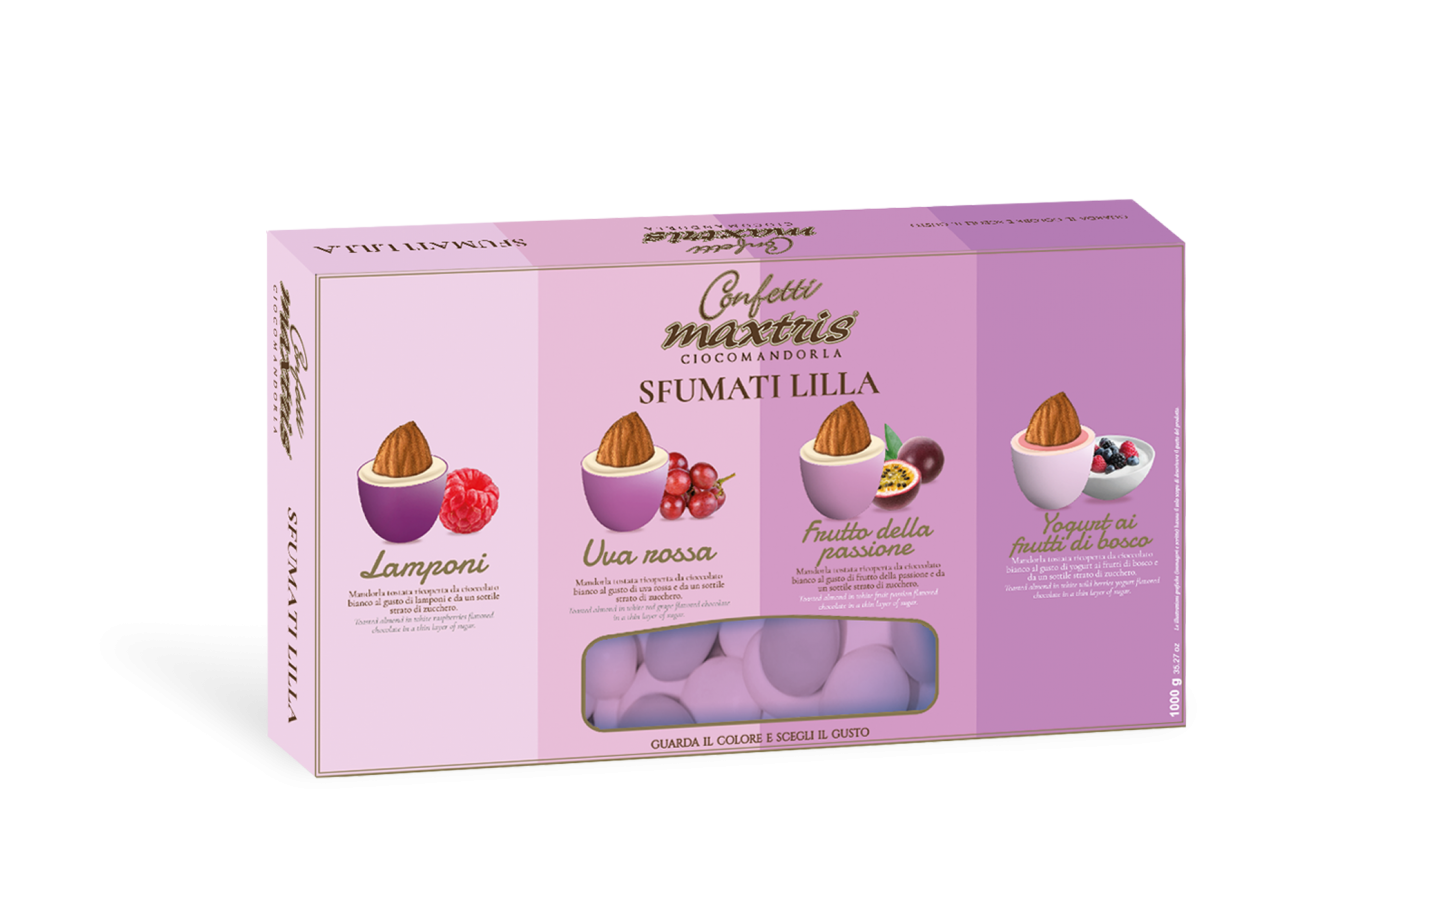 Confetti Maxtris cioccomandorla sfumati lilla 1kg – Miano Cake & Party